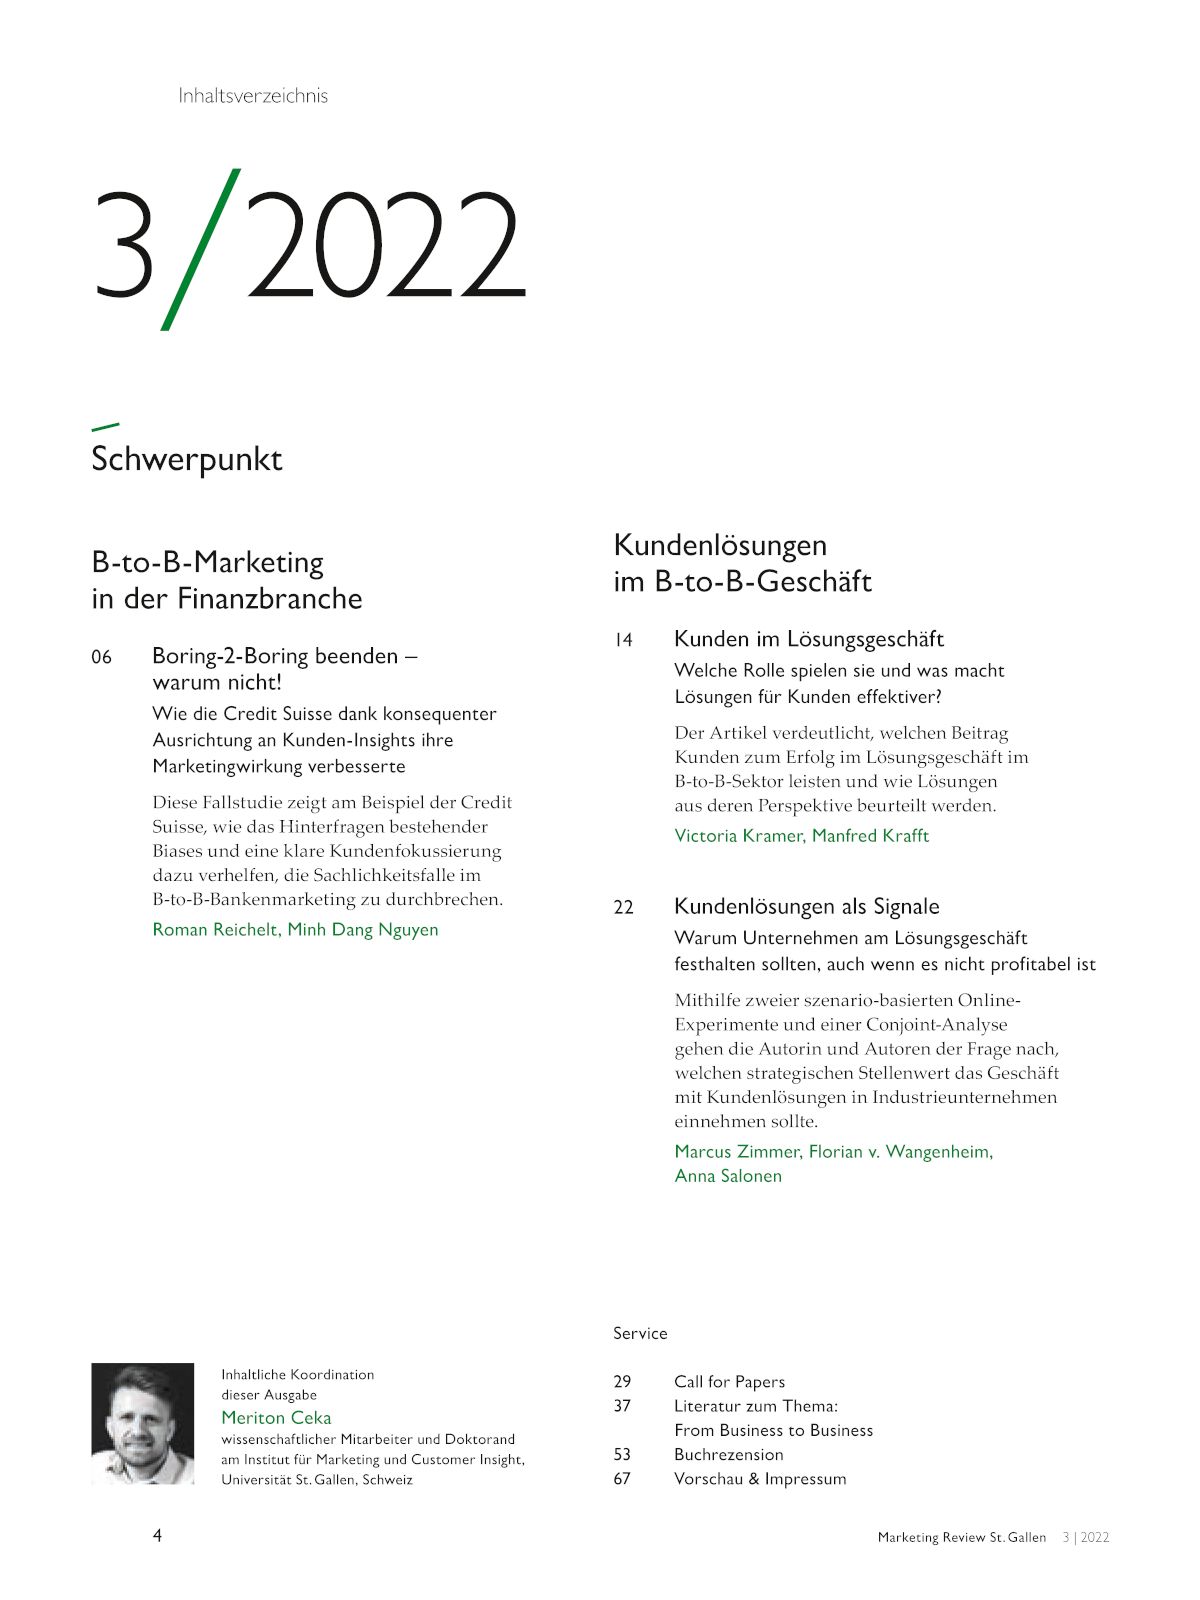 Marketing Review 3-2022 Inhaltsverzeichnis